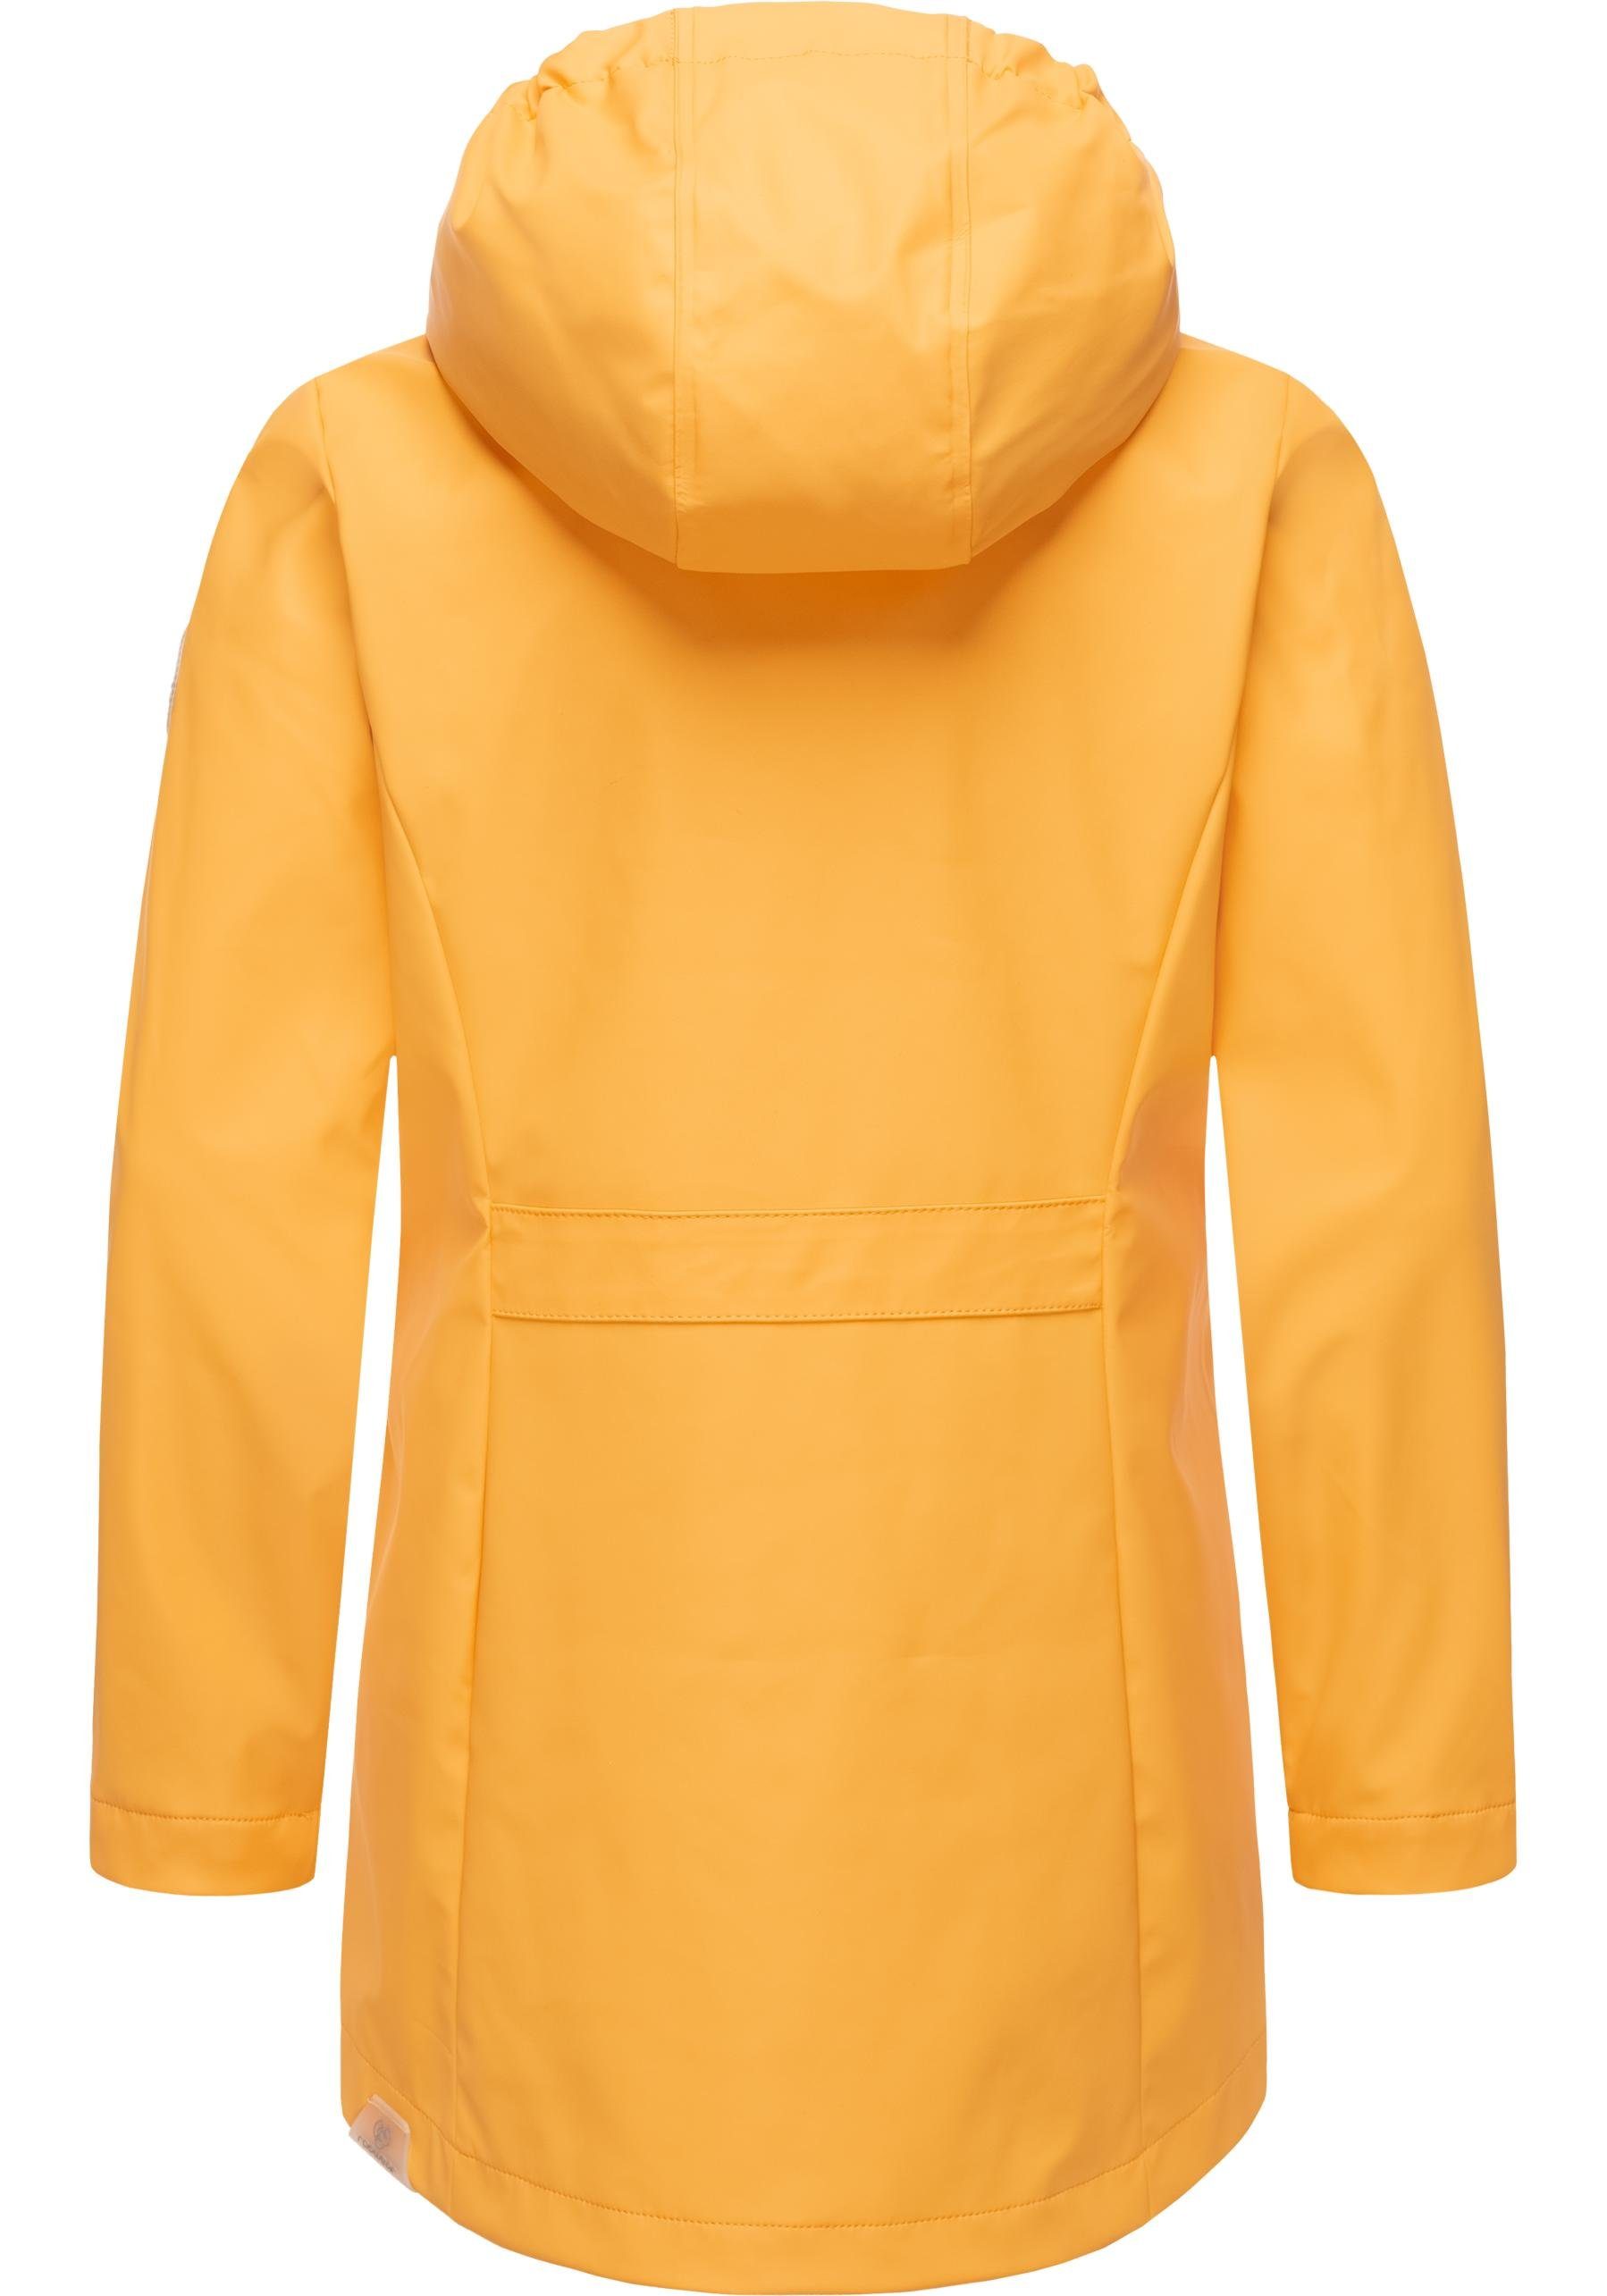 Regenparka mit geschweißten Nähten Regenmantel stylischer gelb Mädchen Marjanka II Ragwear